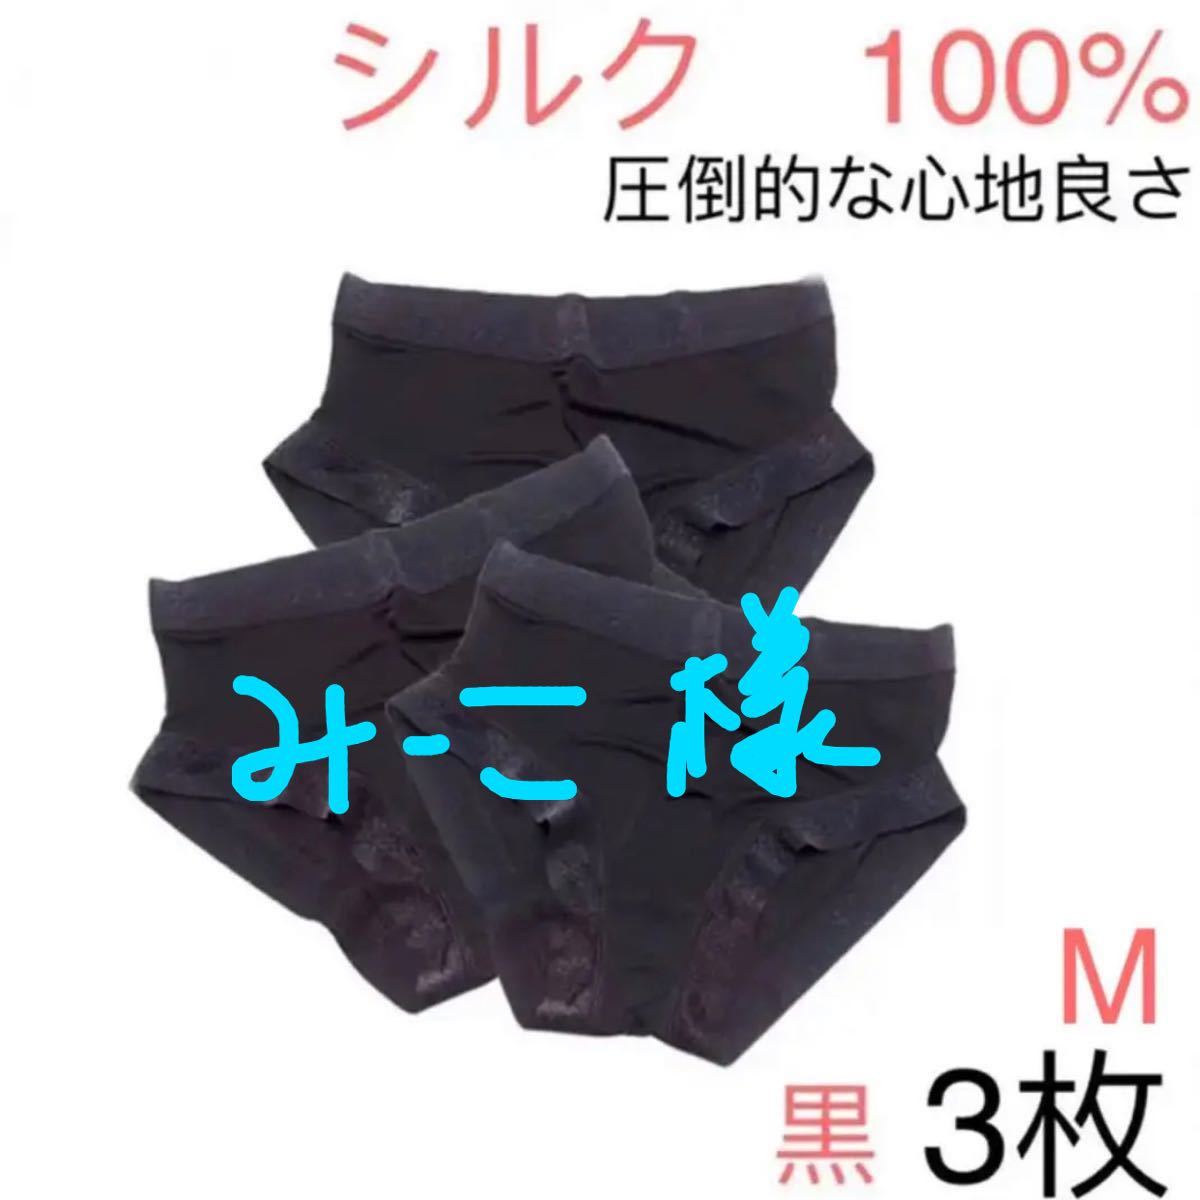 シルク　100% 　絹ショーツ　シンプル　M 3枚セット　ブラック　黒&パット付きタンクトップM黒1点